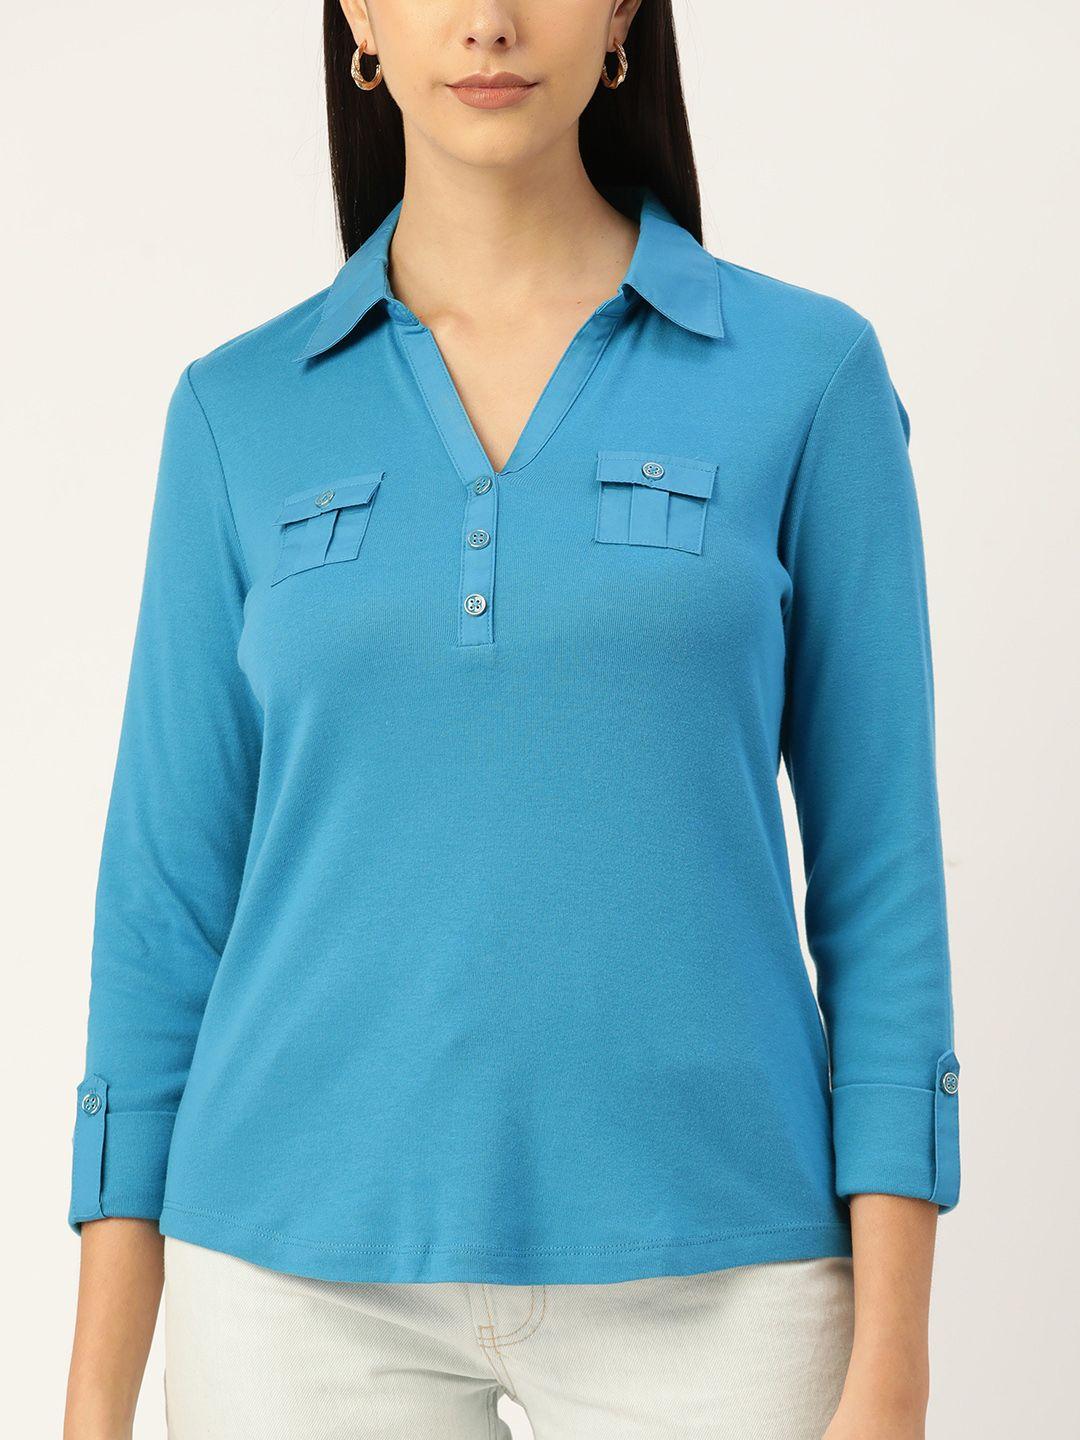 macy's karen scott blue roll-up sleeves shirt style top